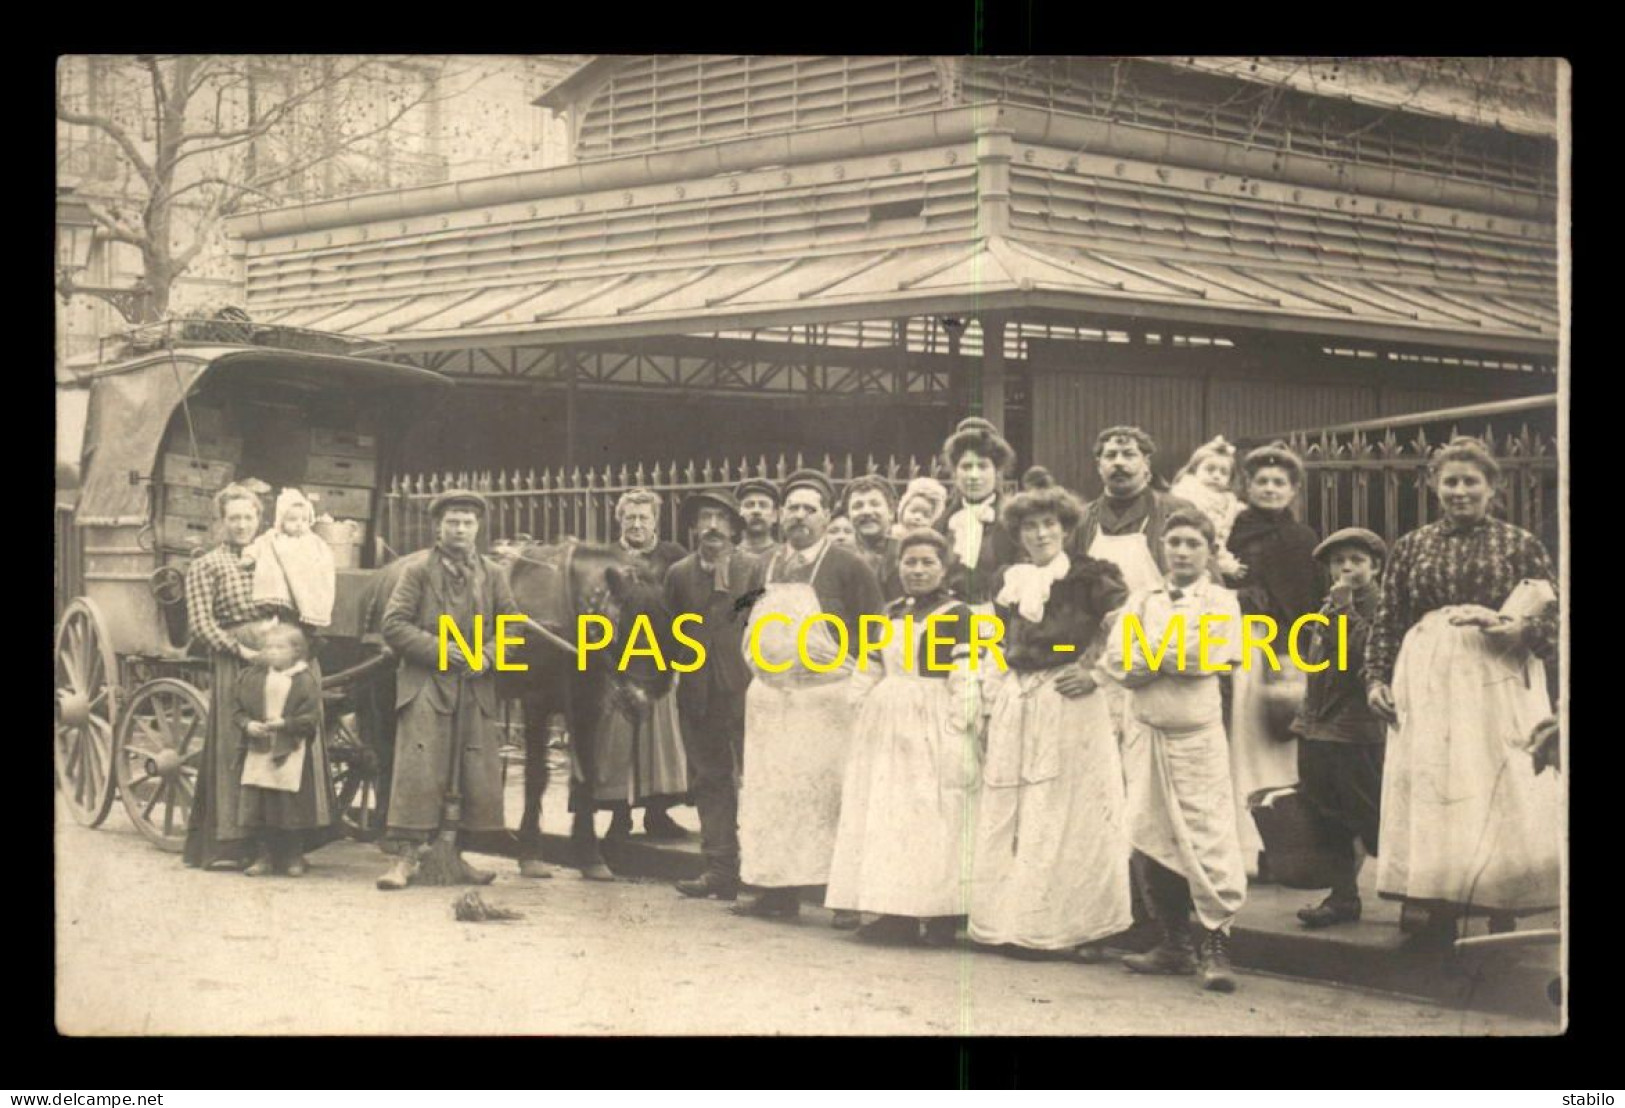 92 - BOULOGNE -SUR-SEINE - LE MARCHE COUVERT - CARTE PHOTO ORIGINALE - Boulogne Billancourt